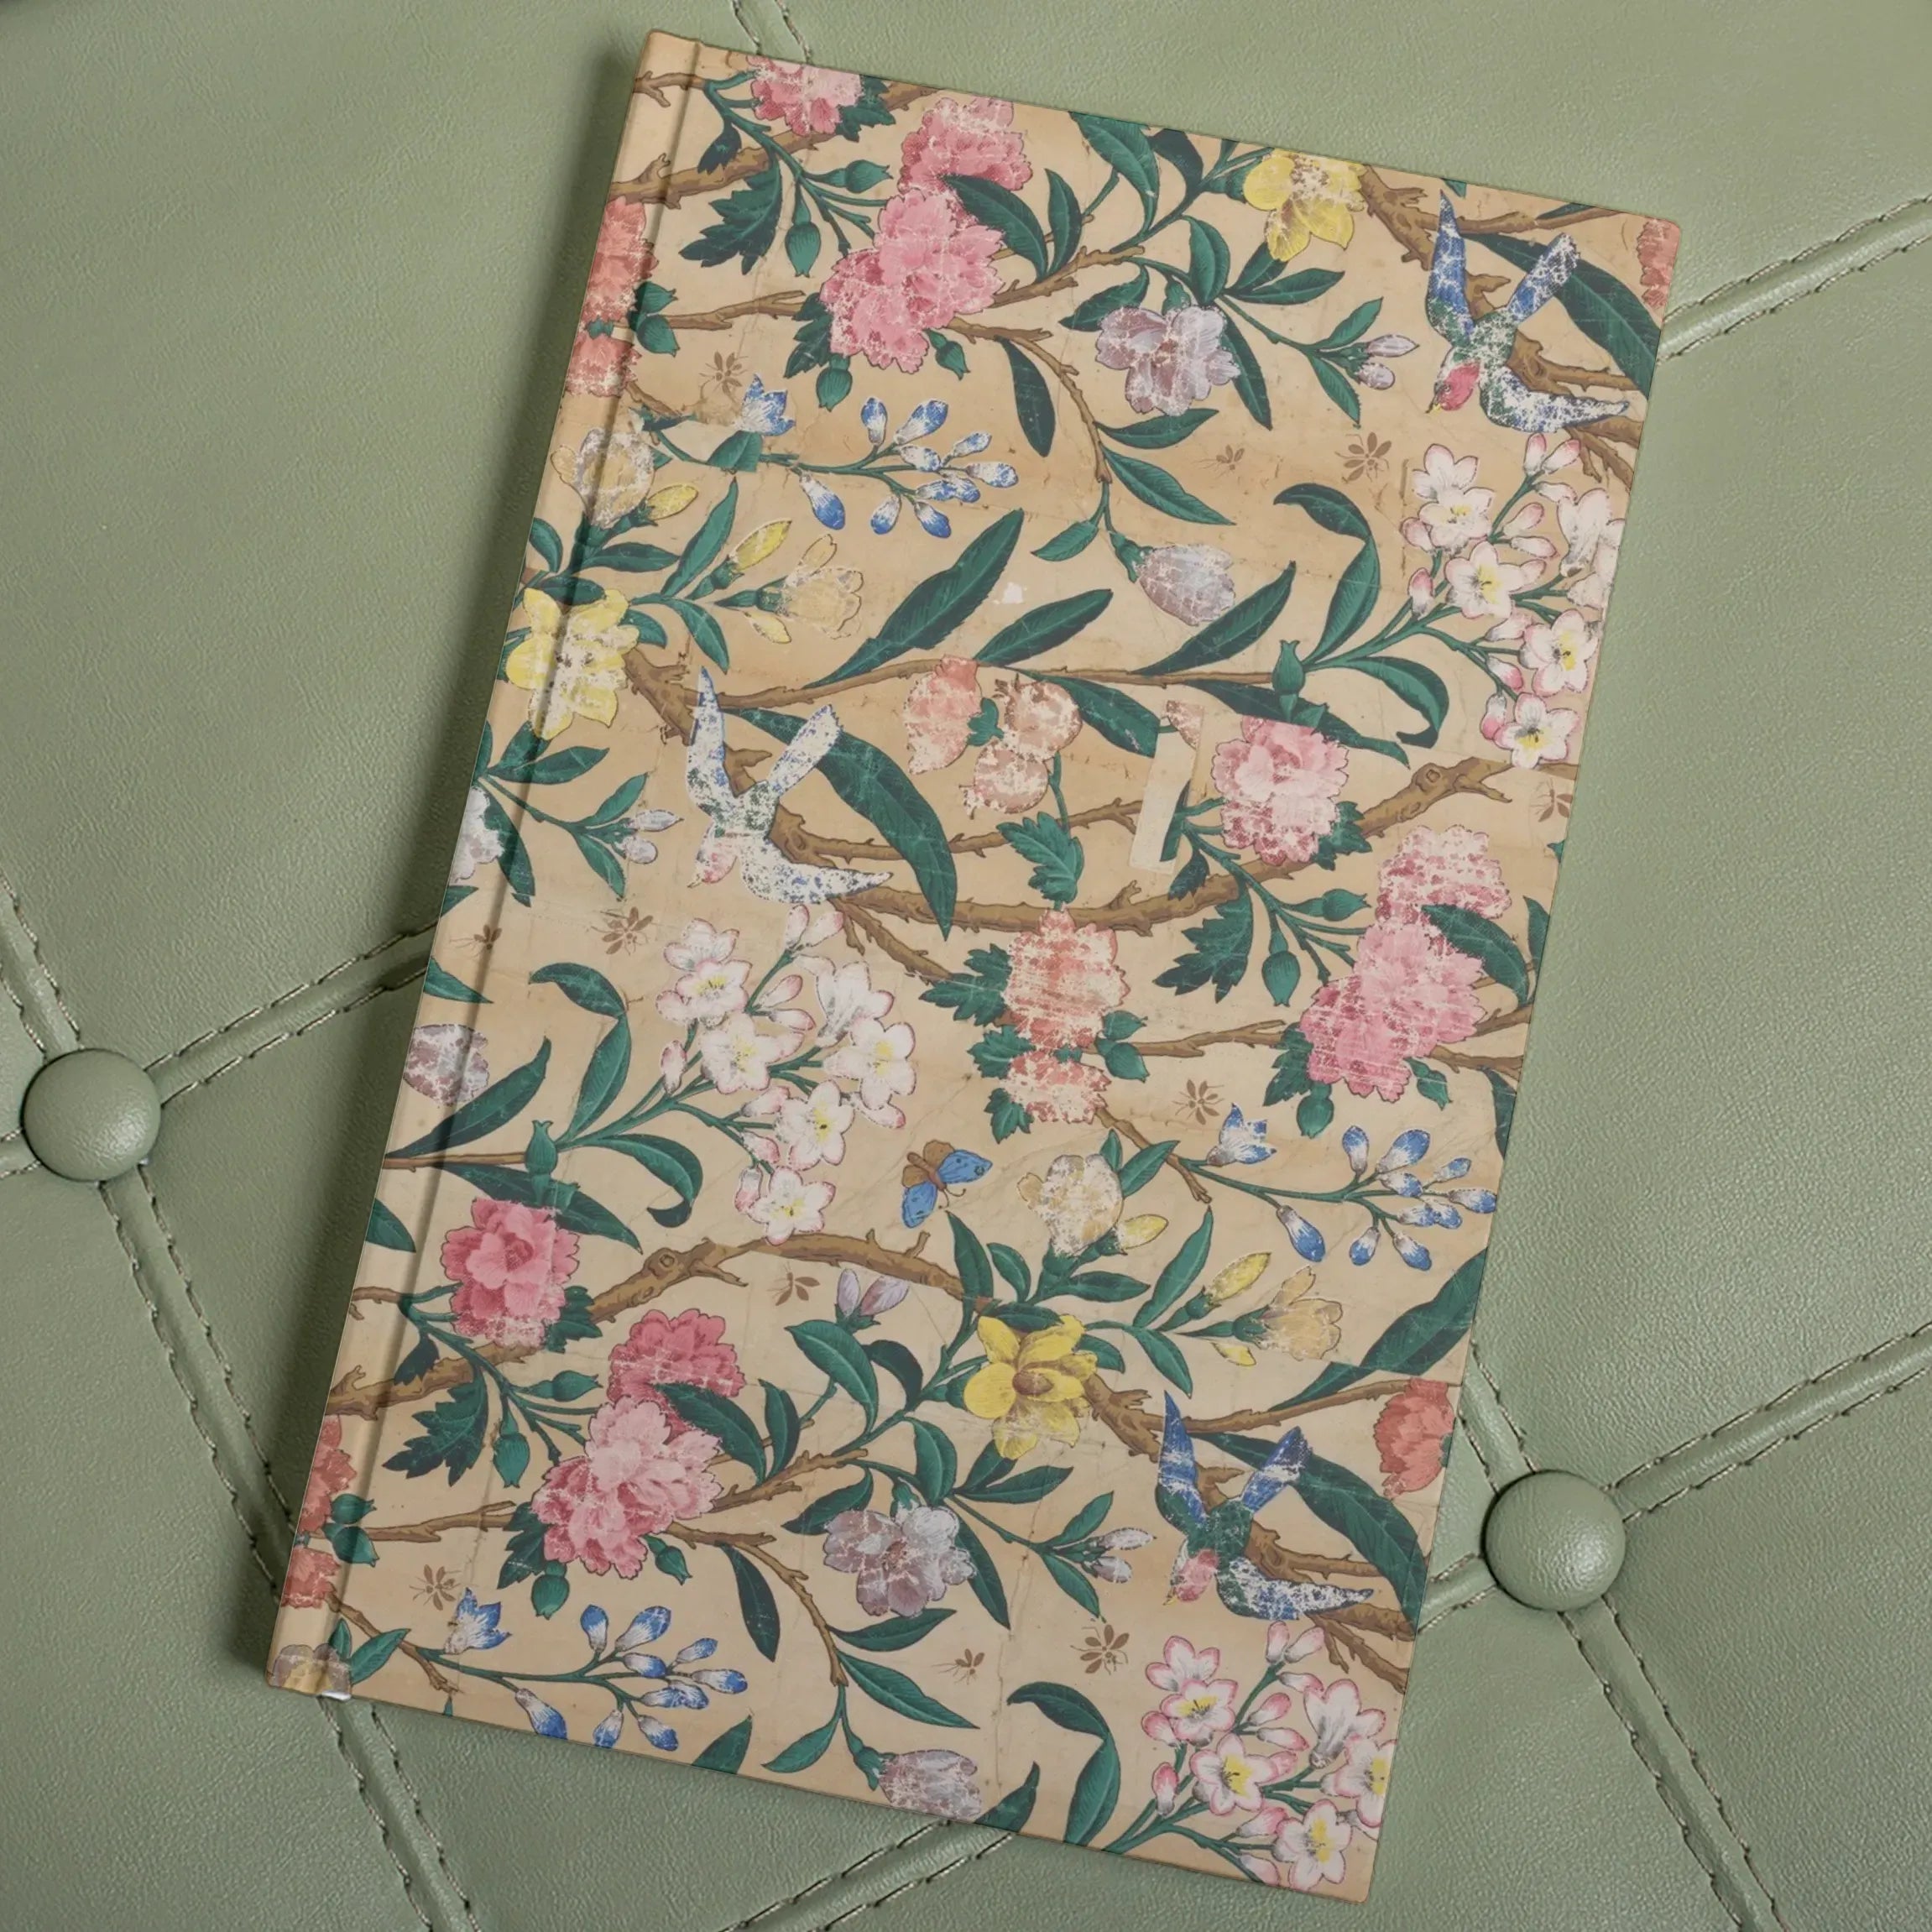 Birds Butterflies Bees And Blossoms Hardback Journal - Notebooks & Notepads - Aesthetic Art